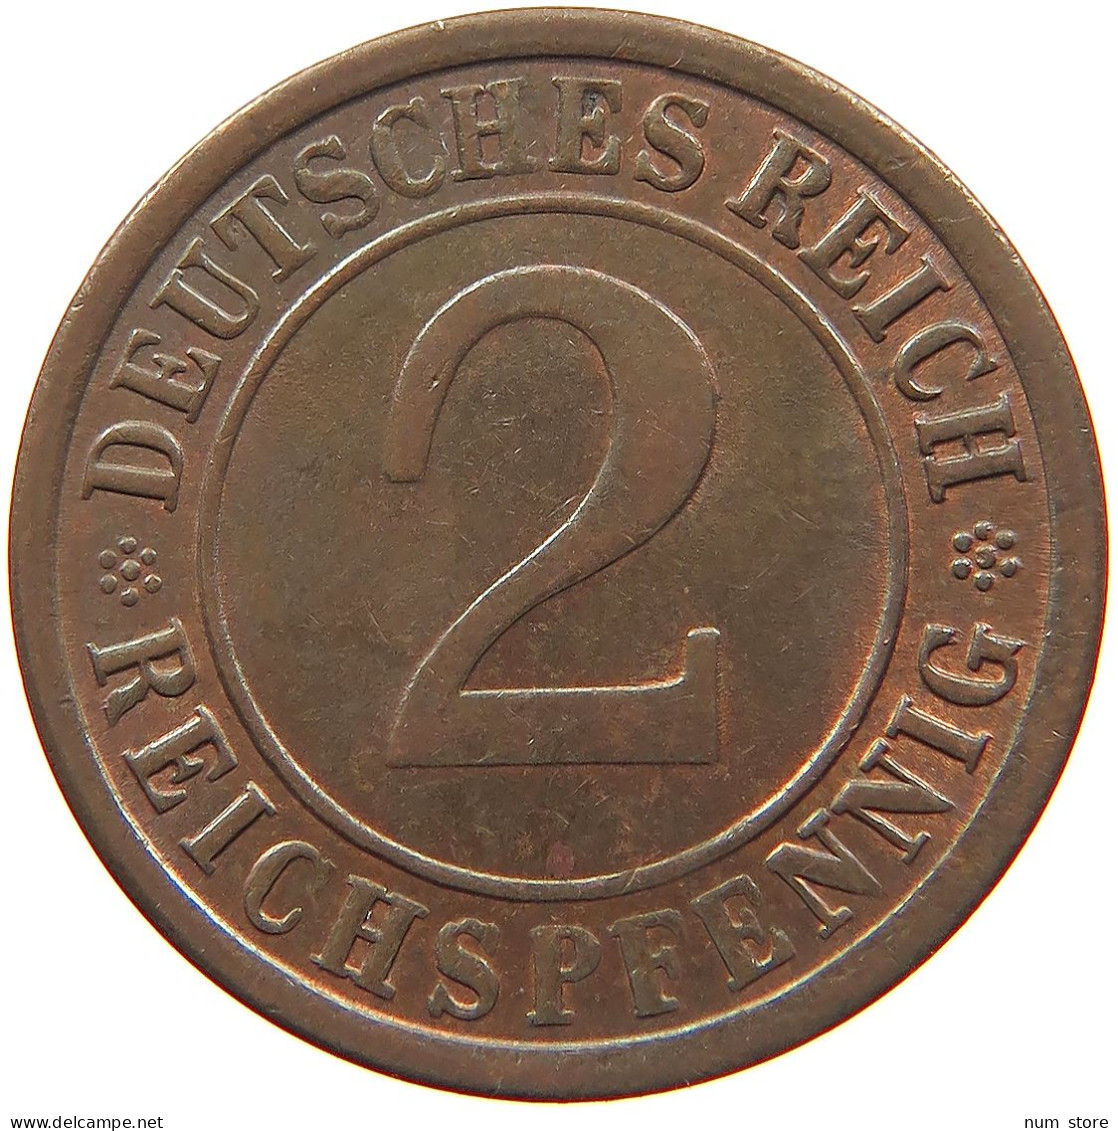 GERMANY WEIMAR 2 REICHSPFENNIG 1924 A #s081 0029 - 2 Rentenpfennig & 2 Reichspfennig